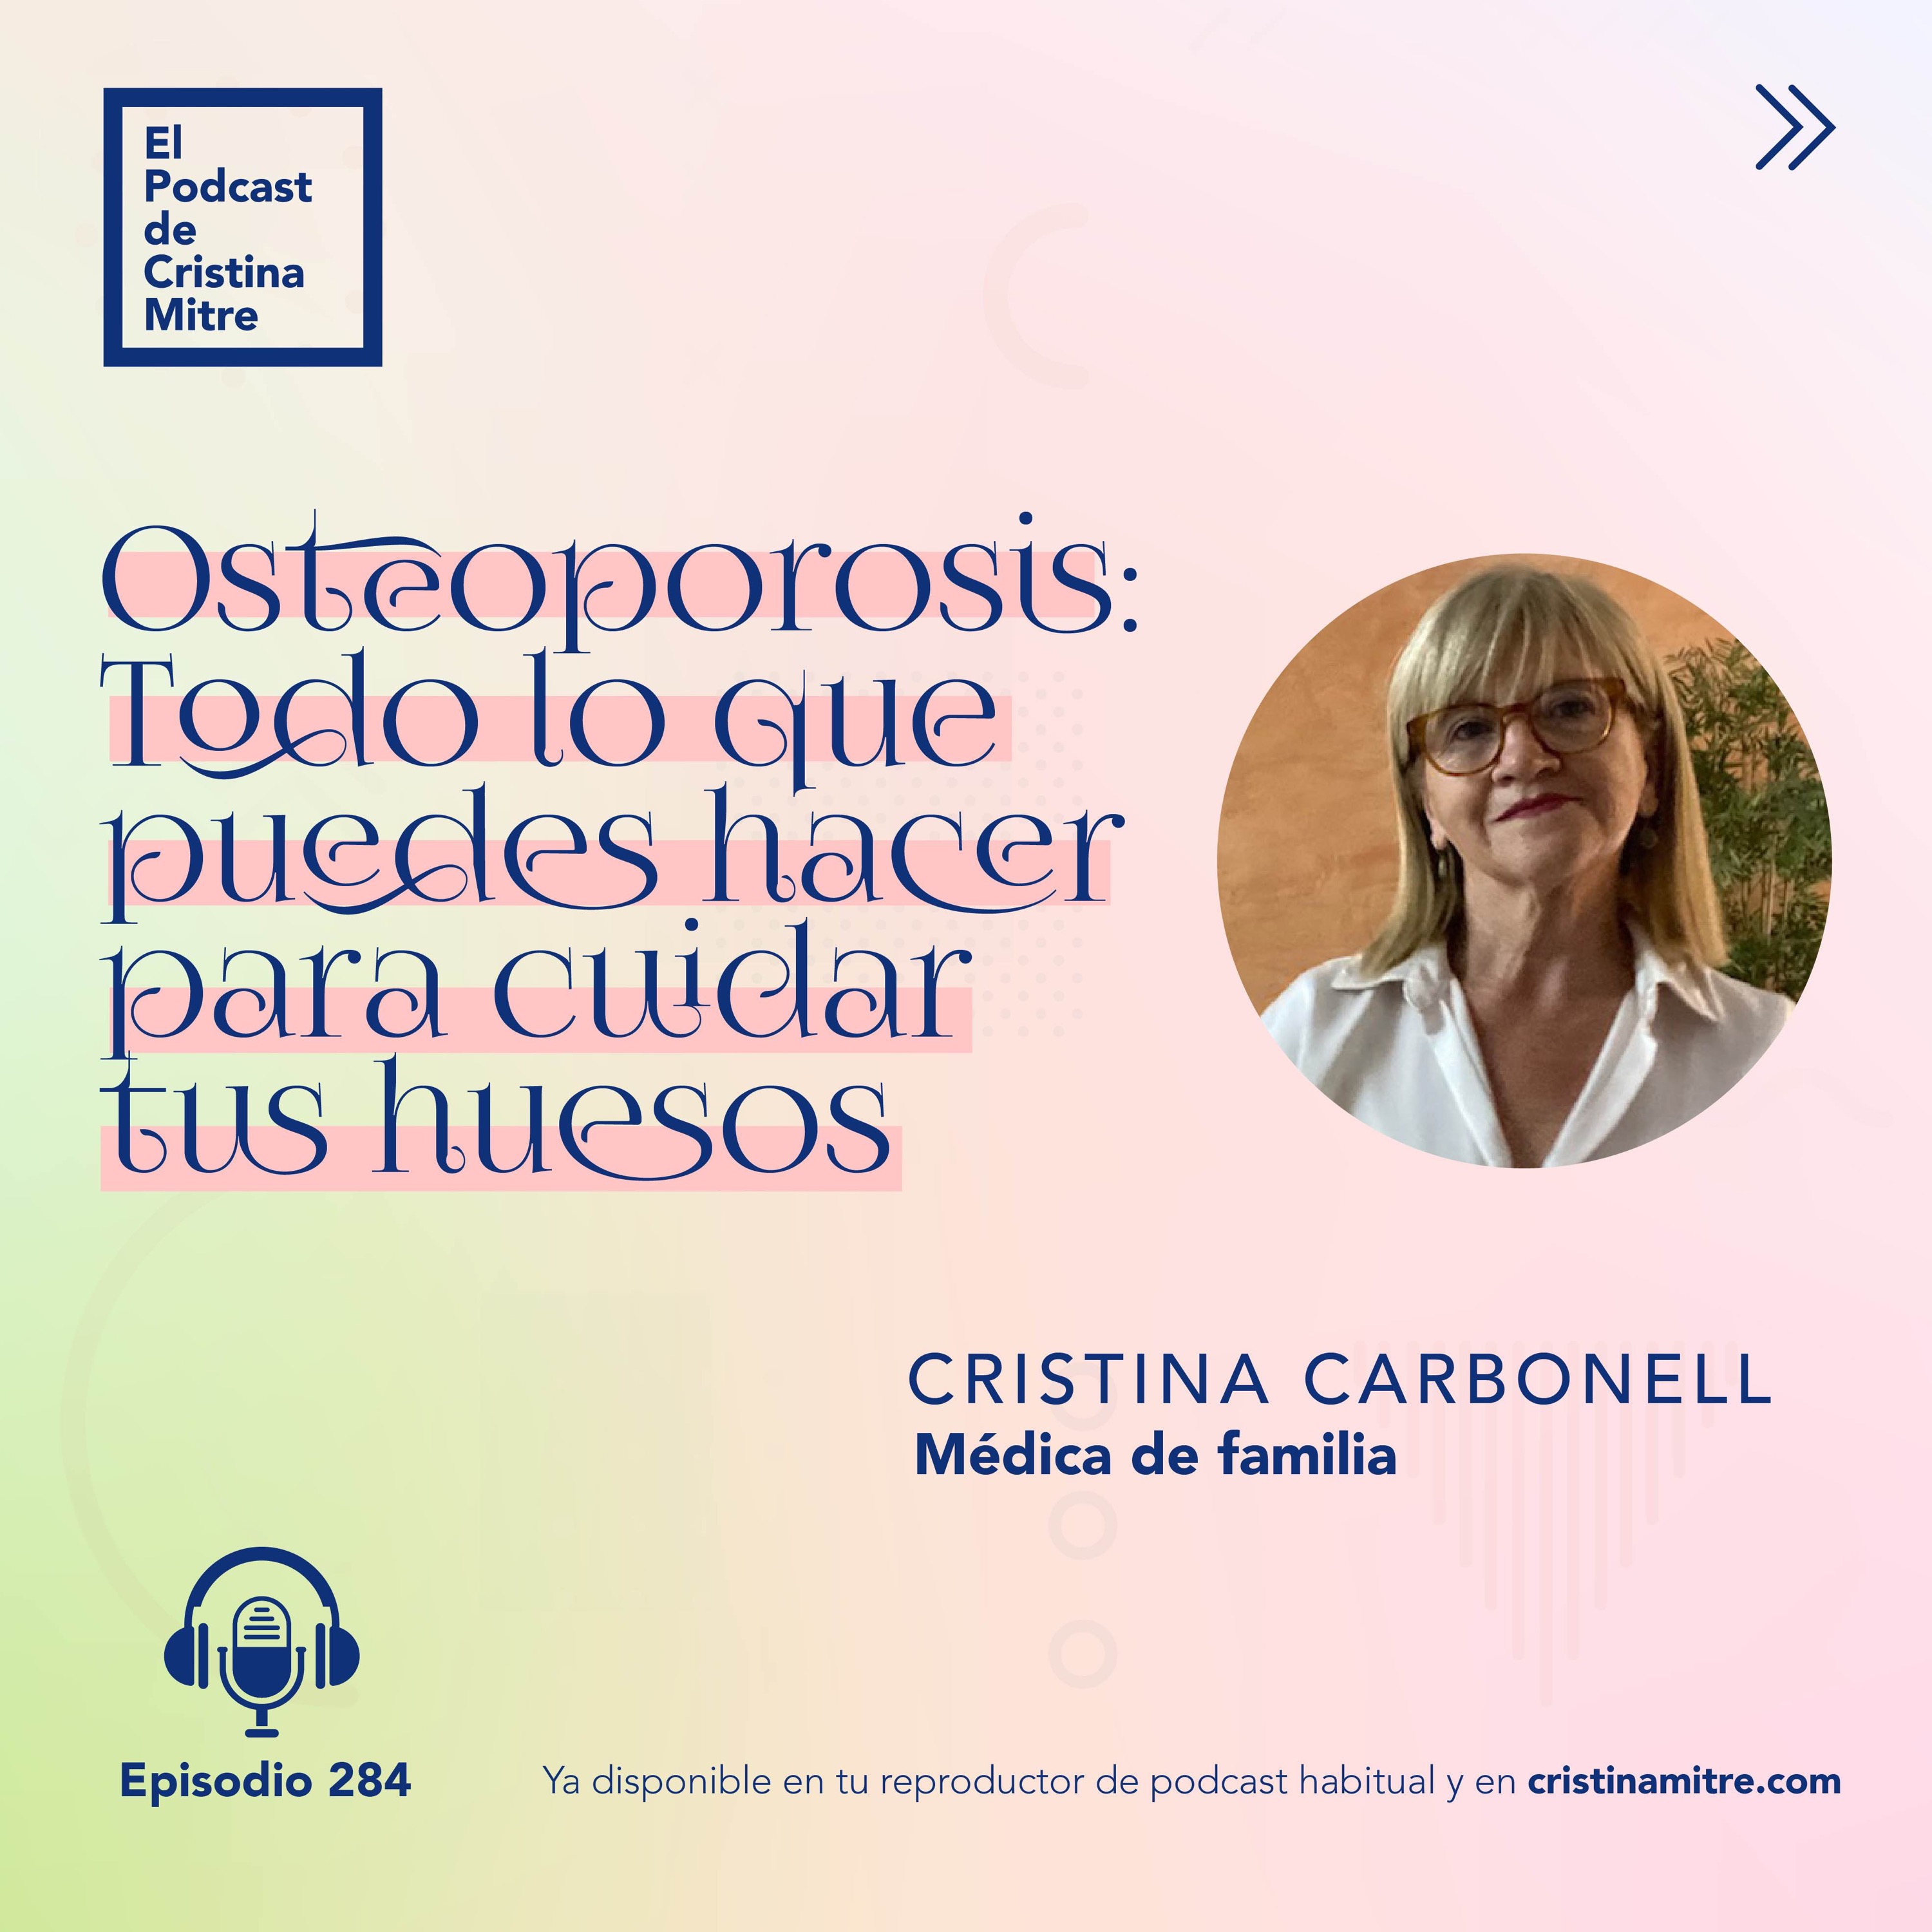 Osteoporosis: Todo lo que puedes hacer para cuidar tus huesos, con Cristina Carbonell. Episodio 284